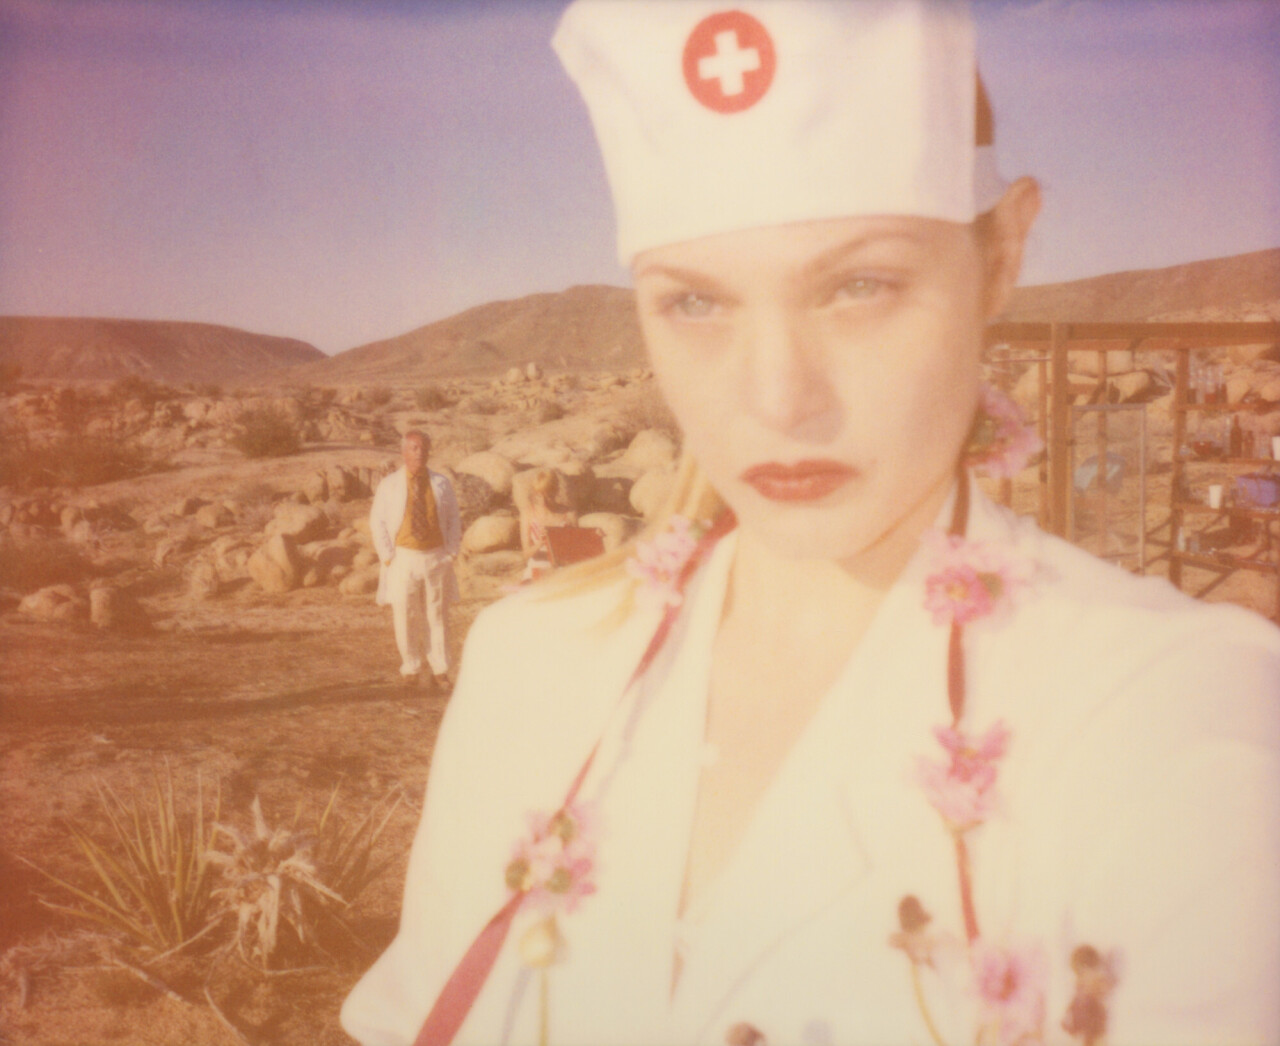 Медсестра (Heathers Dream) из фильма «Девушка за белым частоколом» , 2013 г., полароид. Фотограф Стефани Шнайдер